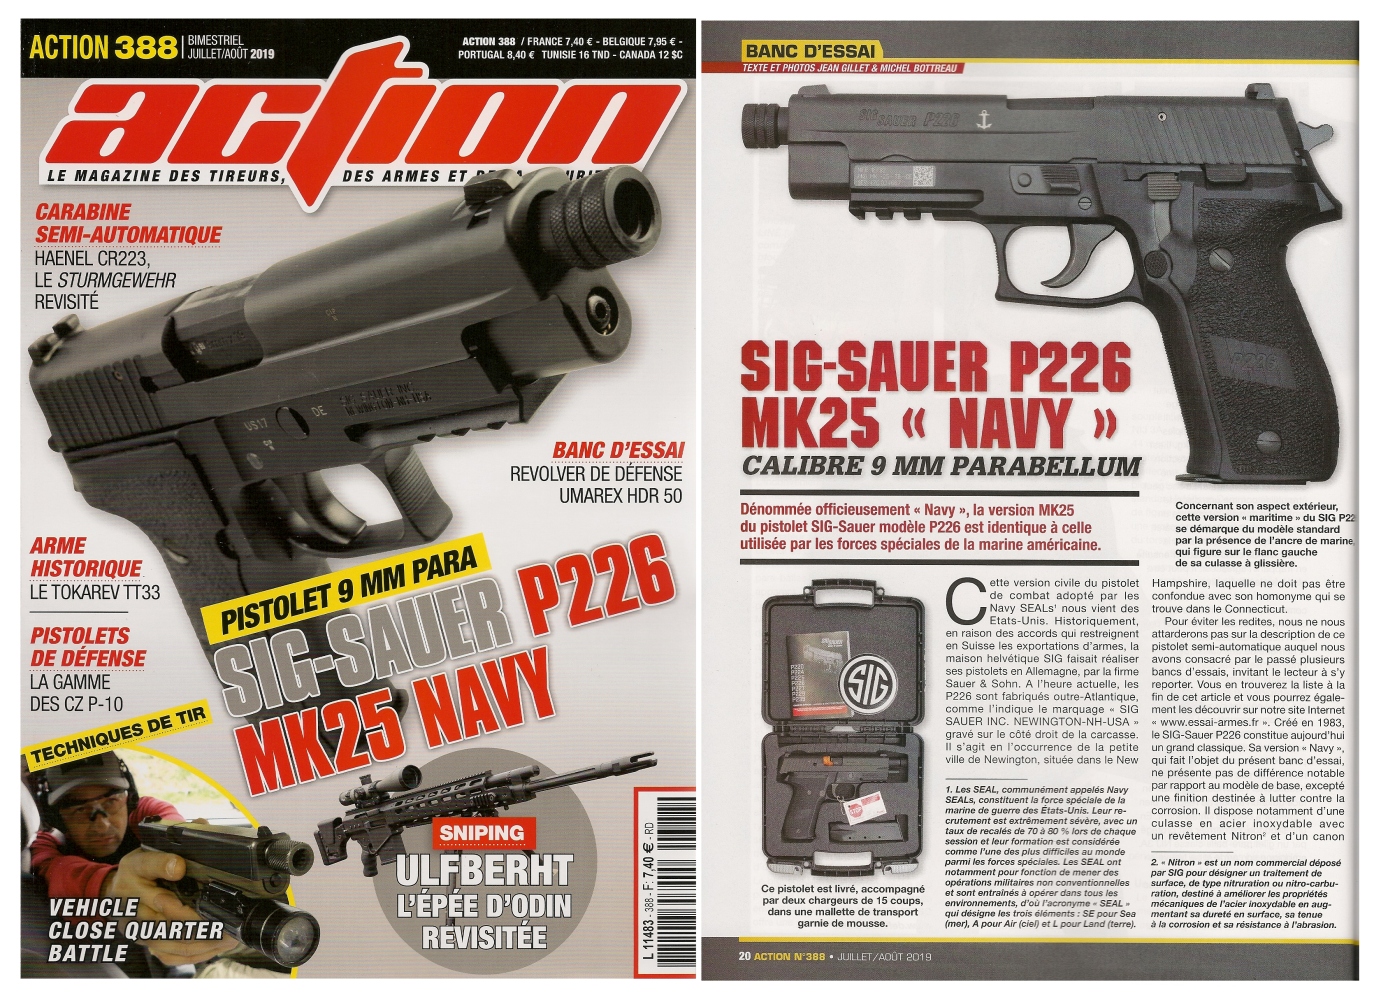 Le banc d’essai du pistolet SIG-Sauer P226 Mk25 Navy a été publié sur 6 pages dans le magazine Action n°388 (juillet/août 2019).